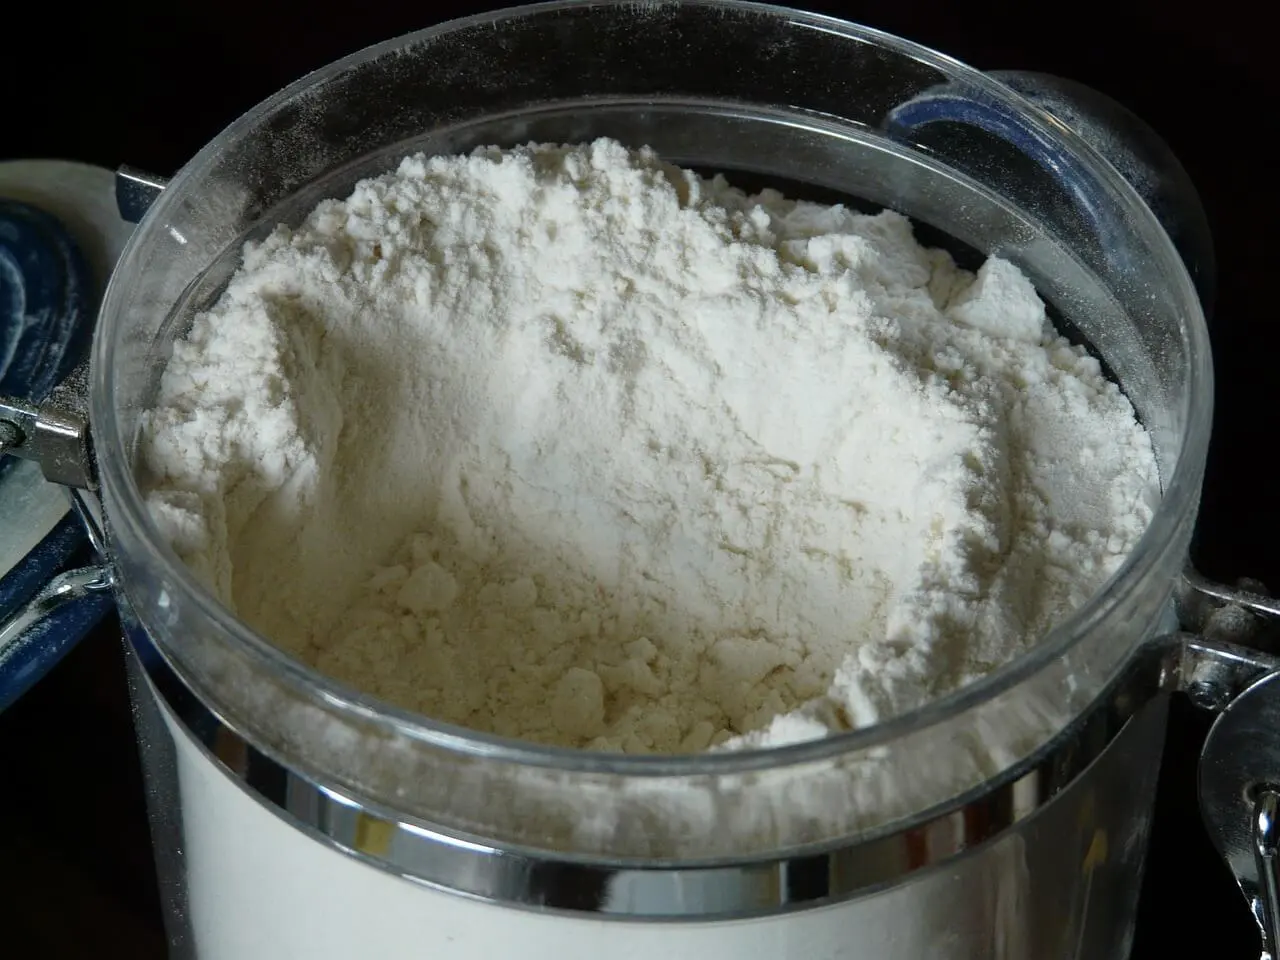 Tepung dalam toples